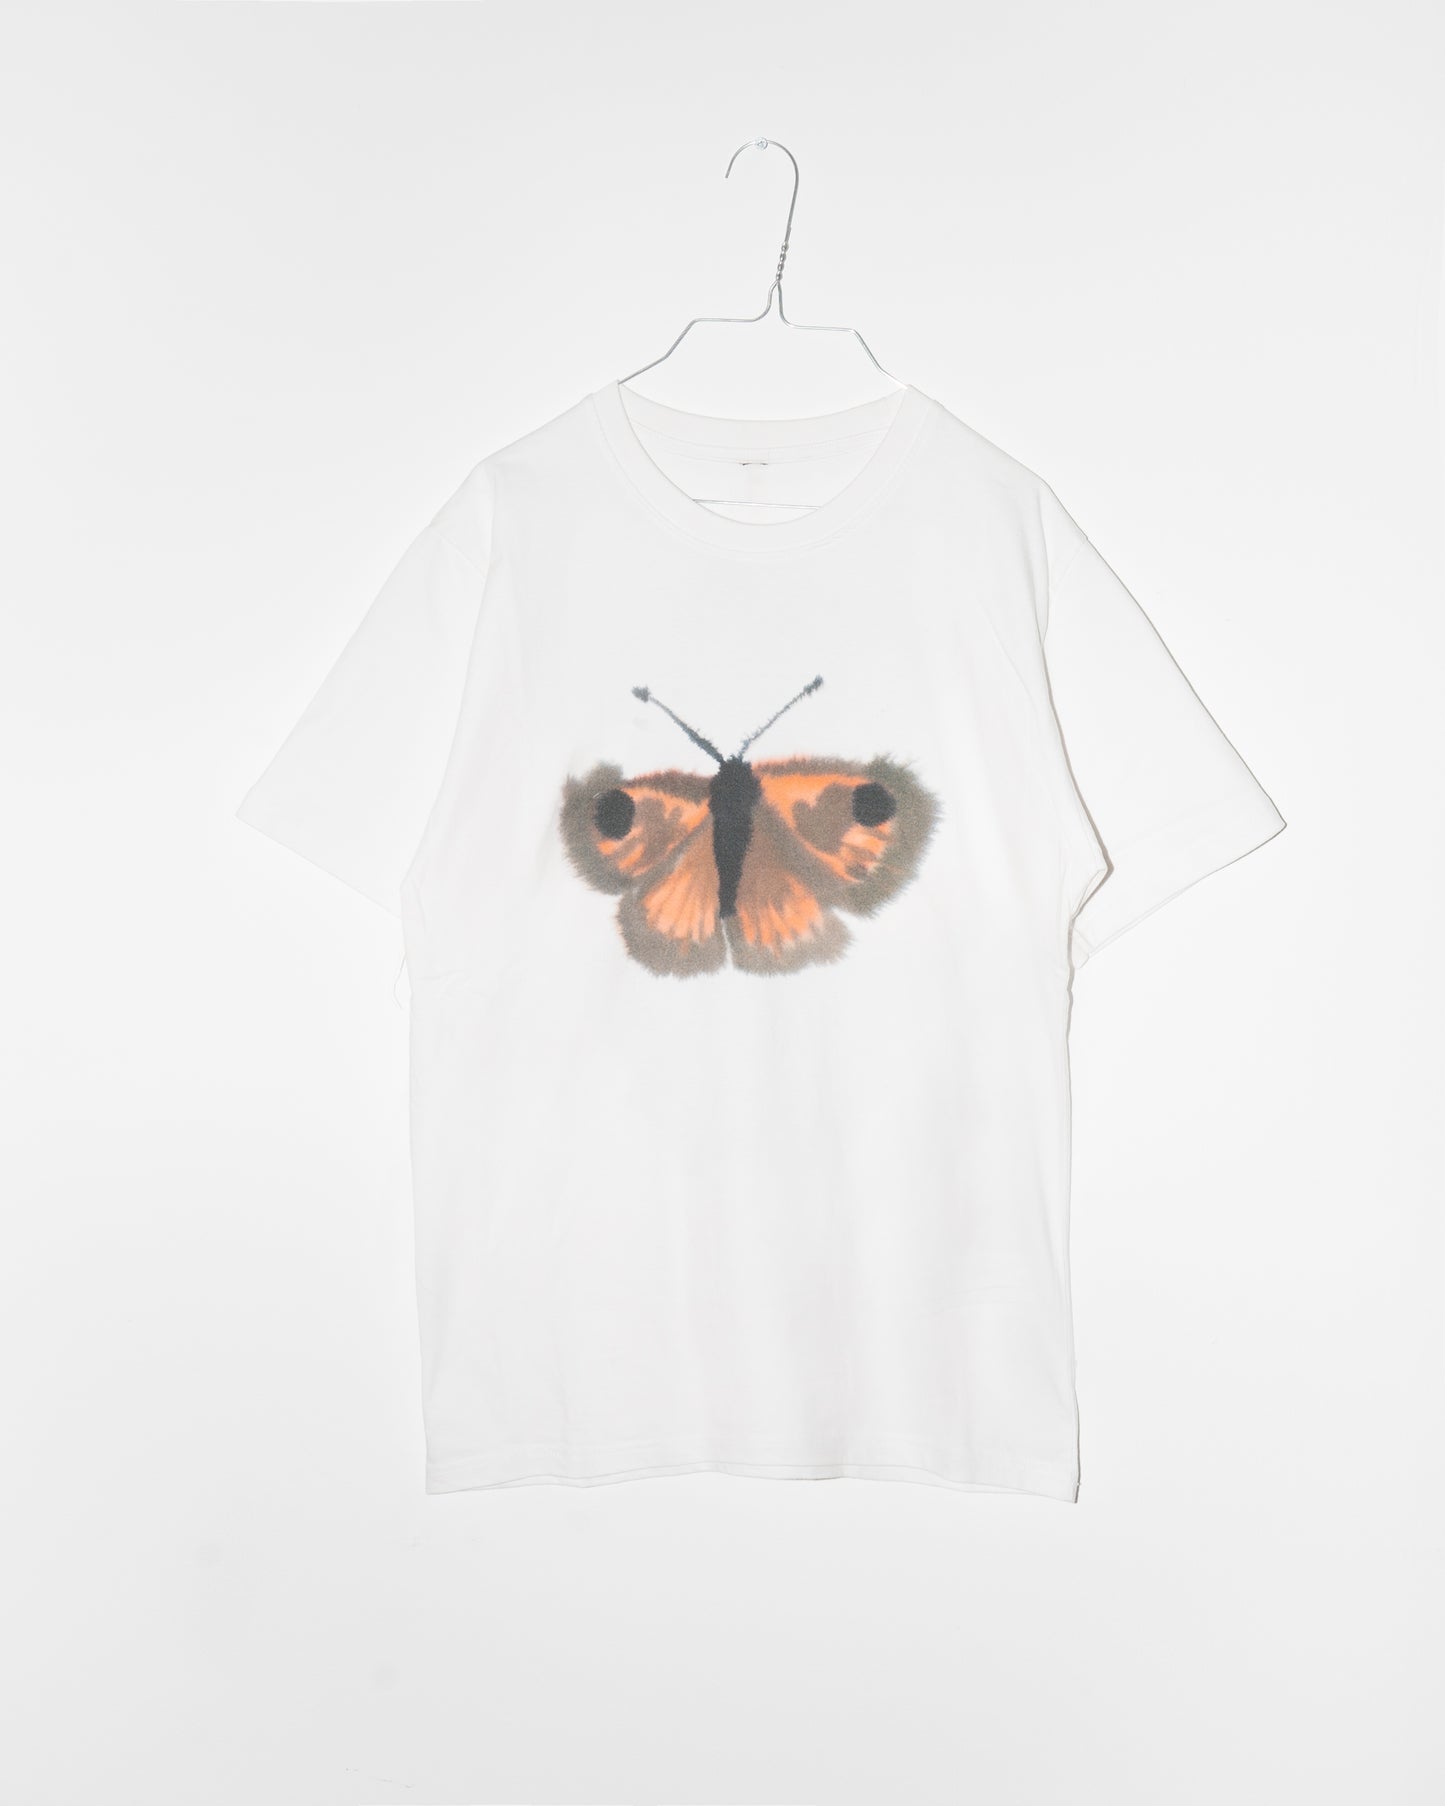 Butterfly, Butterfly, Butterfly